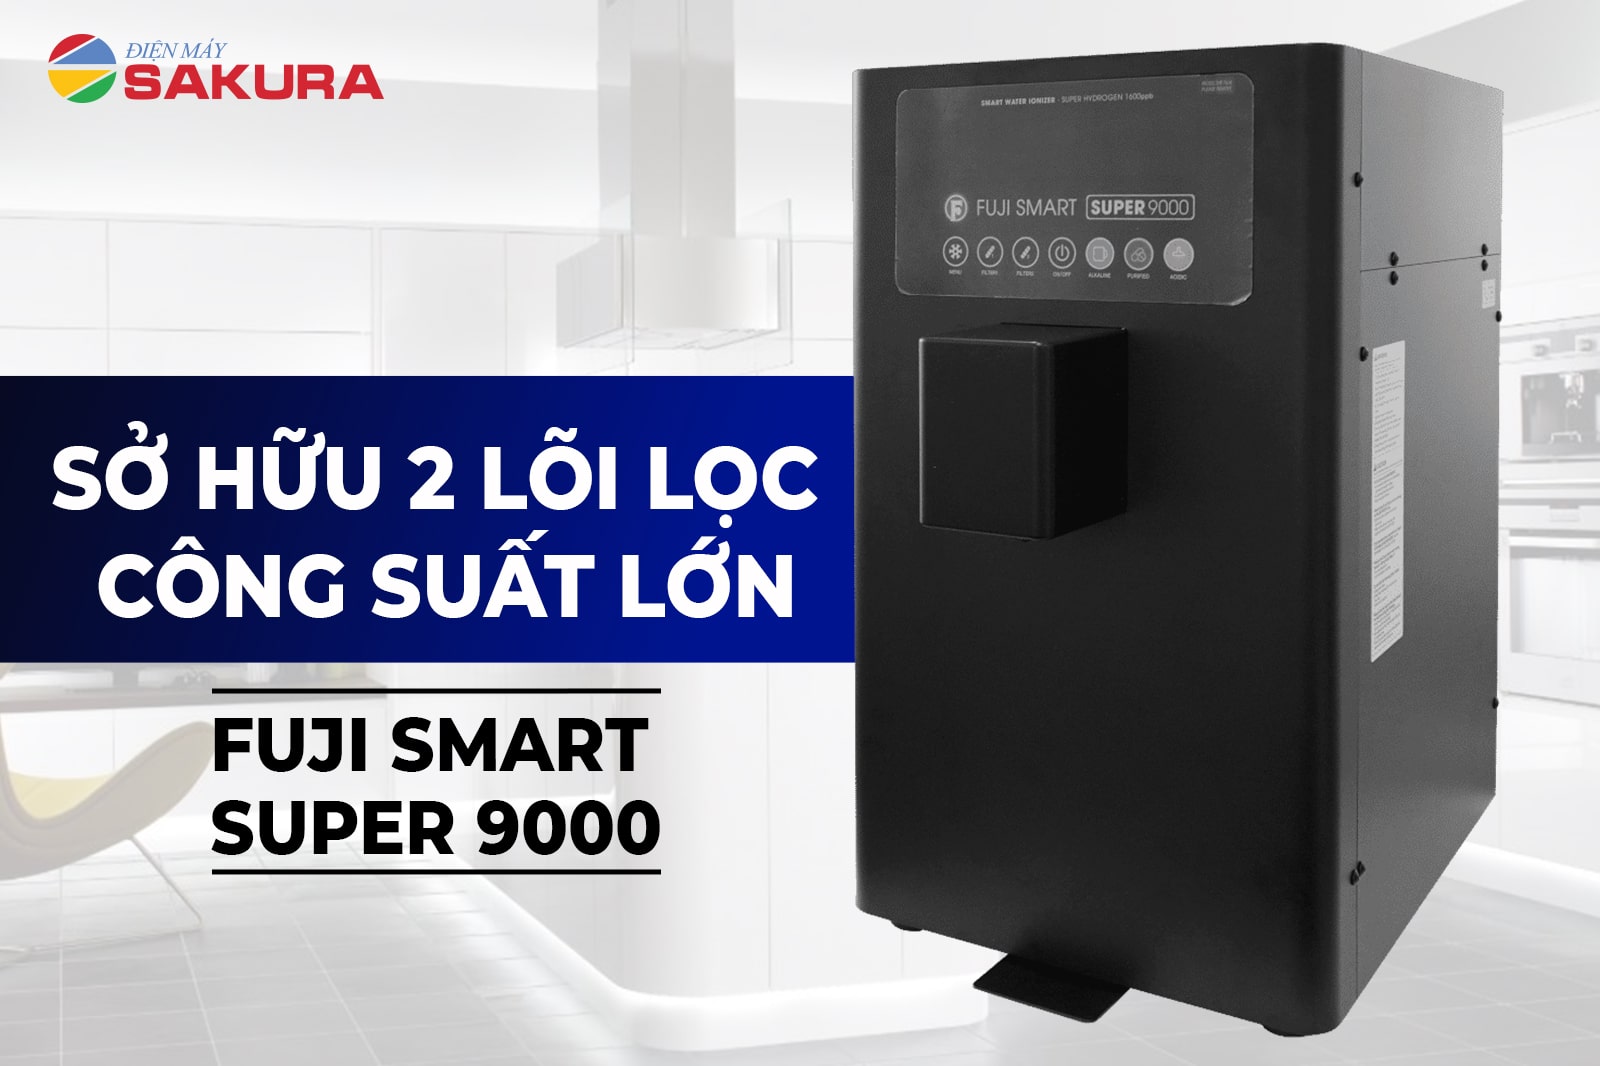 Máy lọc nước Fuji Smart Super 9000 sở hữu 2 lõi lọc công suất lớn